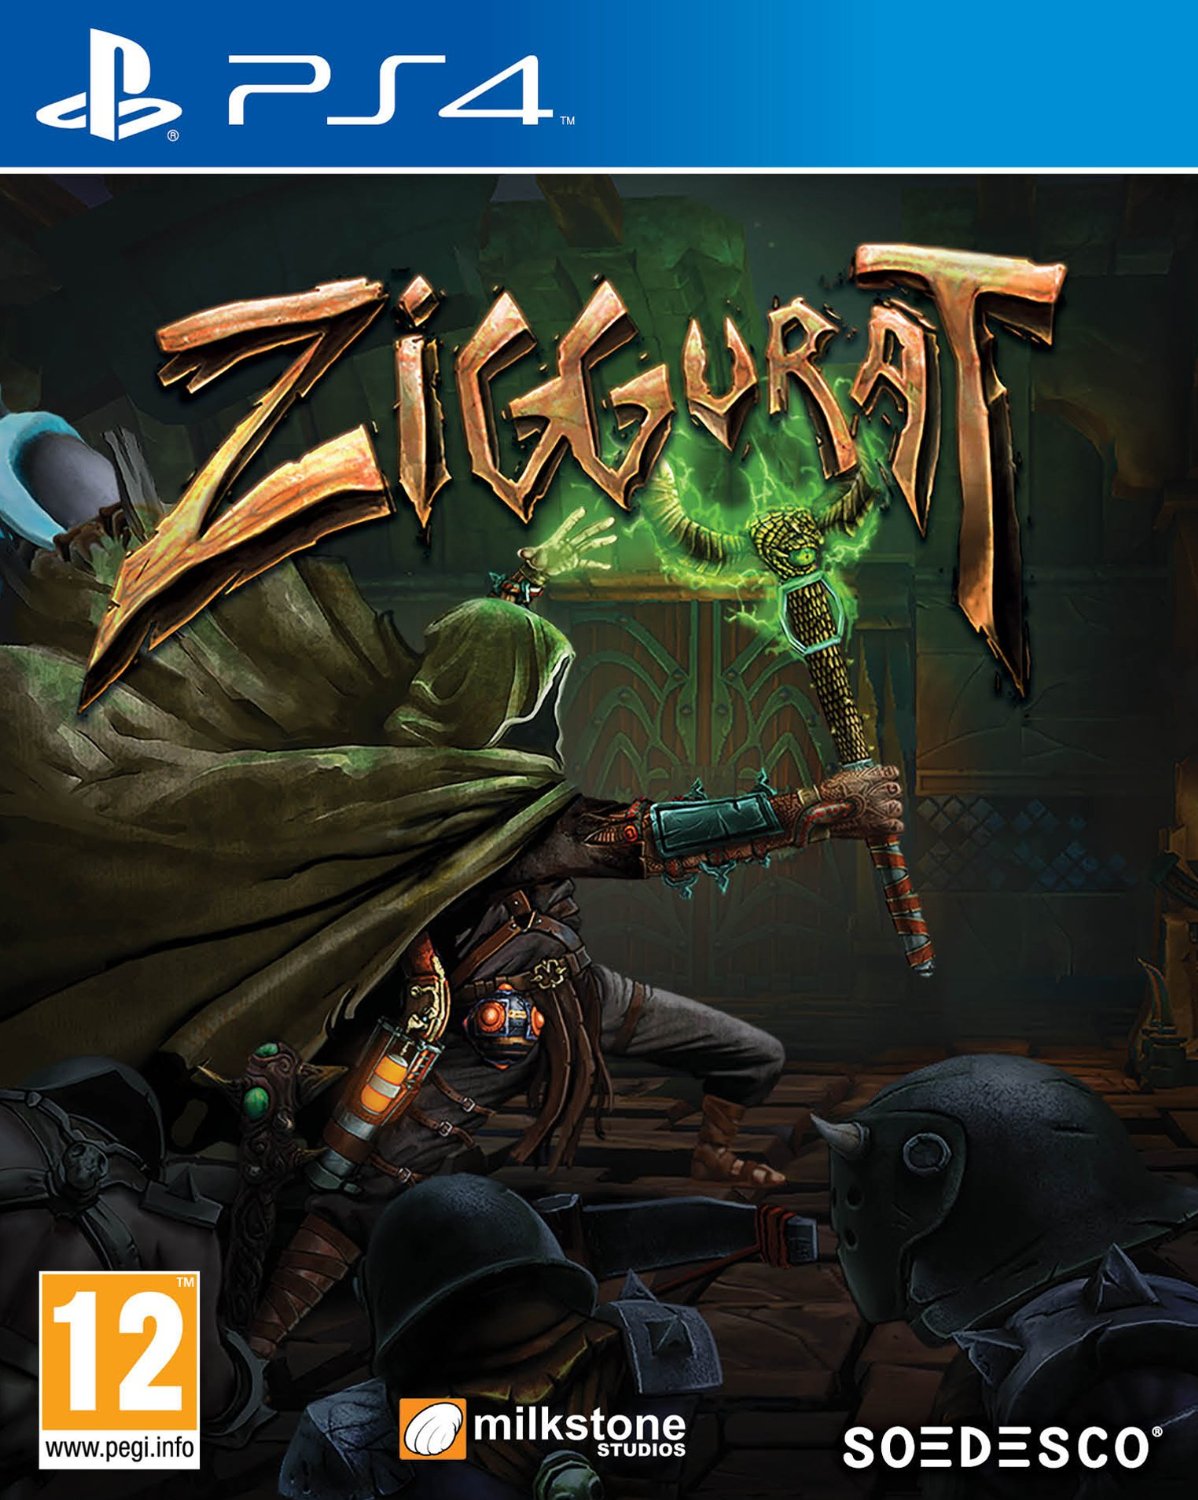 Ziggurat (PS4), Milkstone Studios